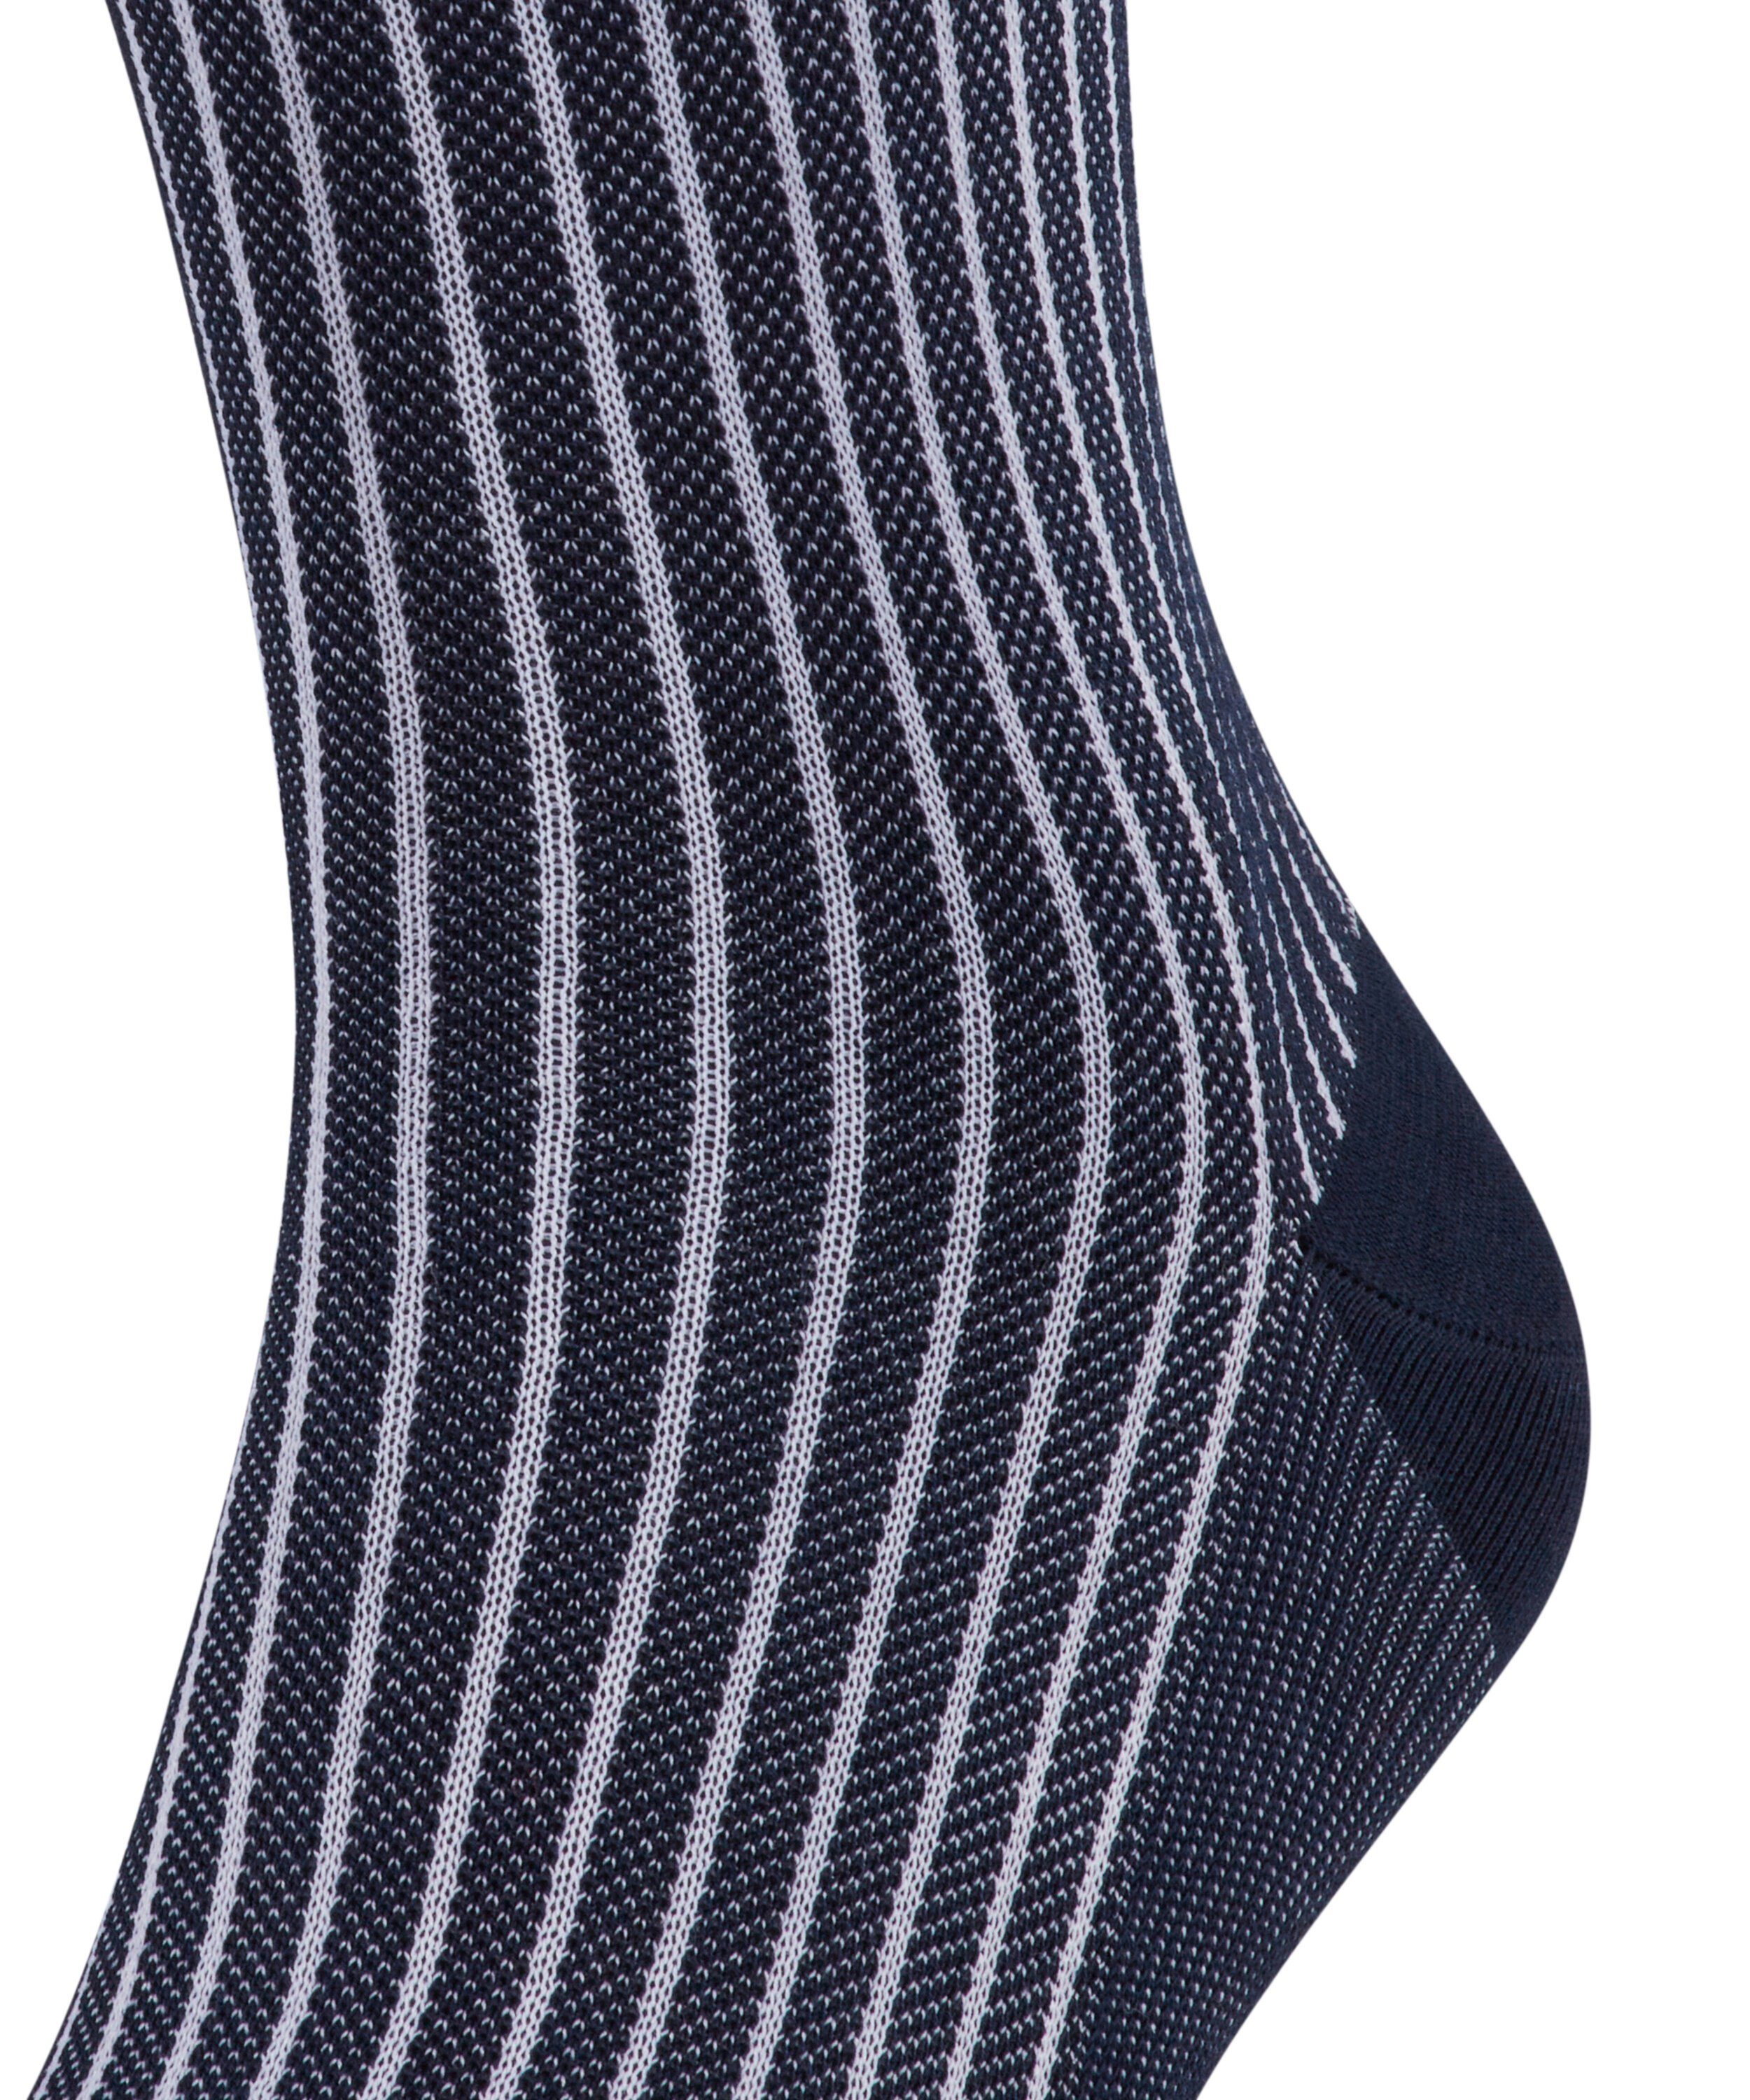 FALKE Socken Oxford Stripe (1-Paar) atlantic (6150)